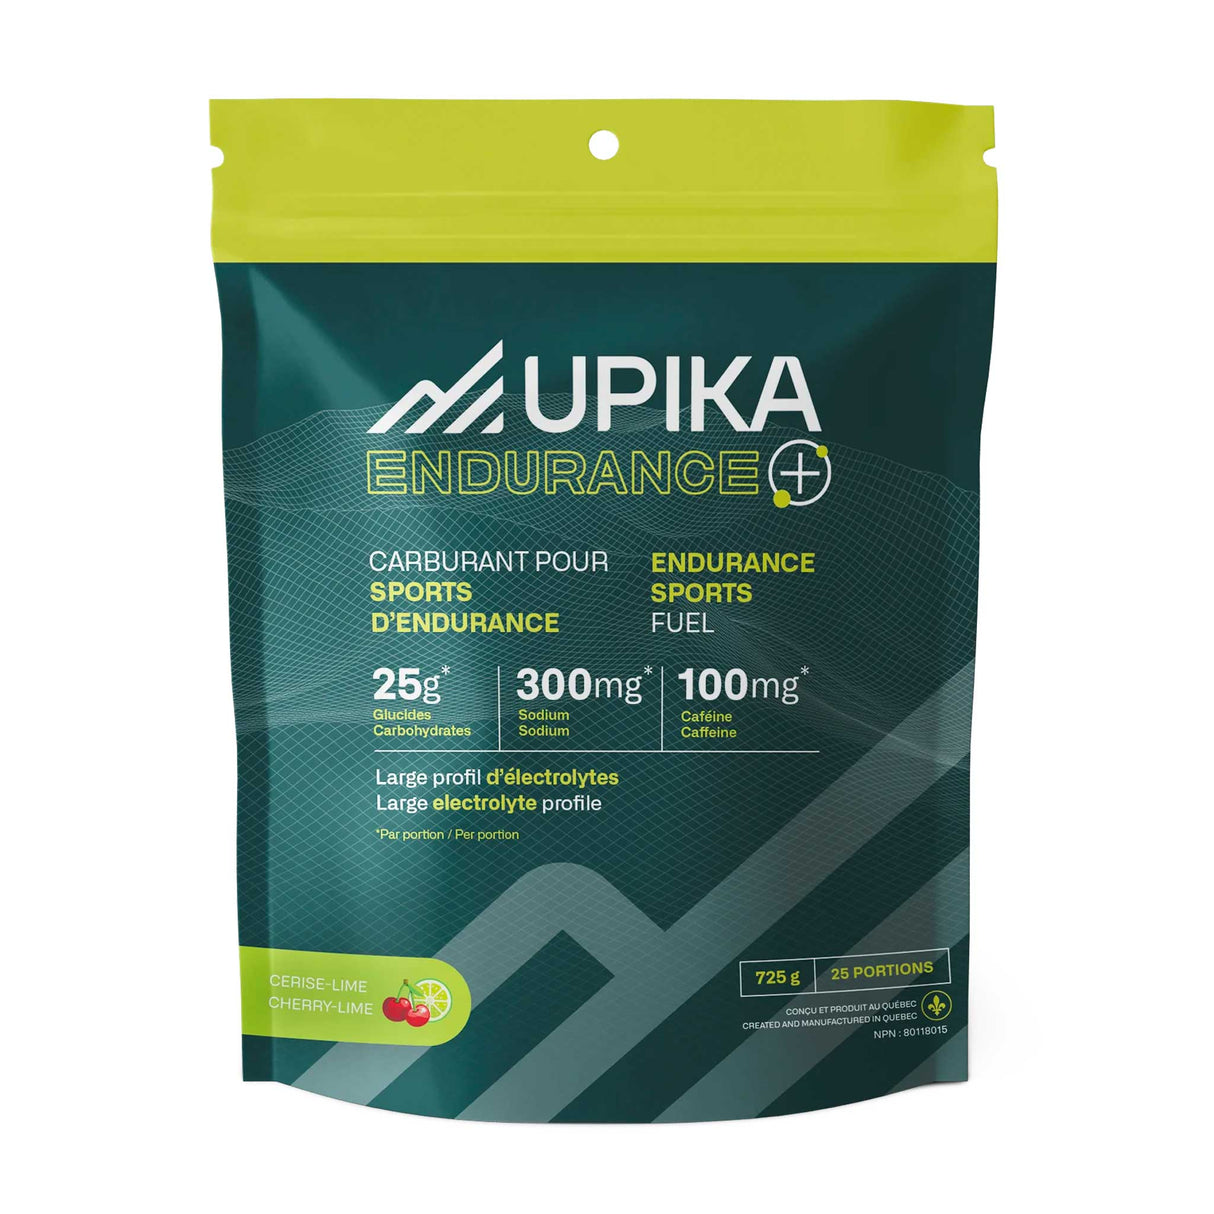 Upika Endurance+ carburant caféiné pour sport d'endurance - 25 portions - Cerise-Lime